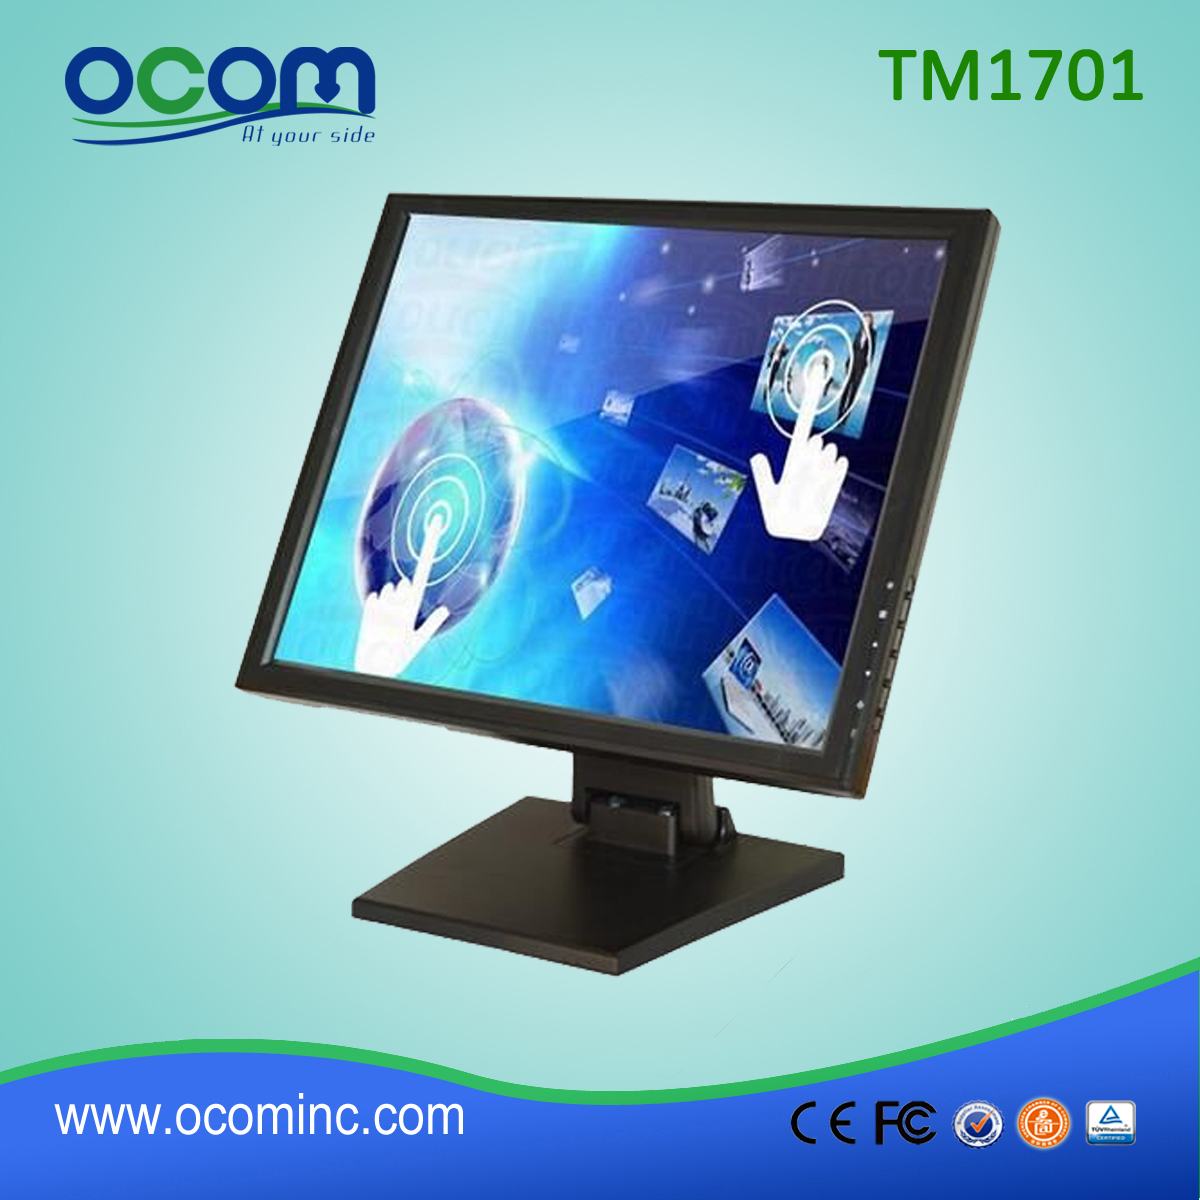 TM1701 Günstige wasserdichte 17-Zoll-Touch-Screen-Monitor